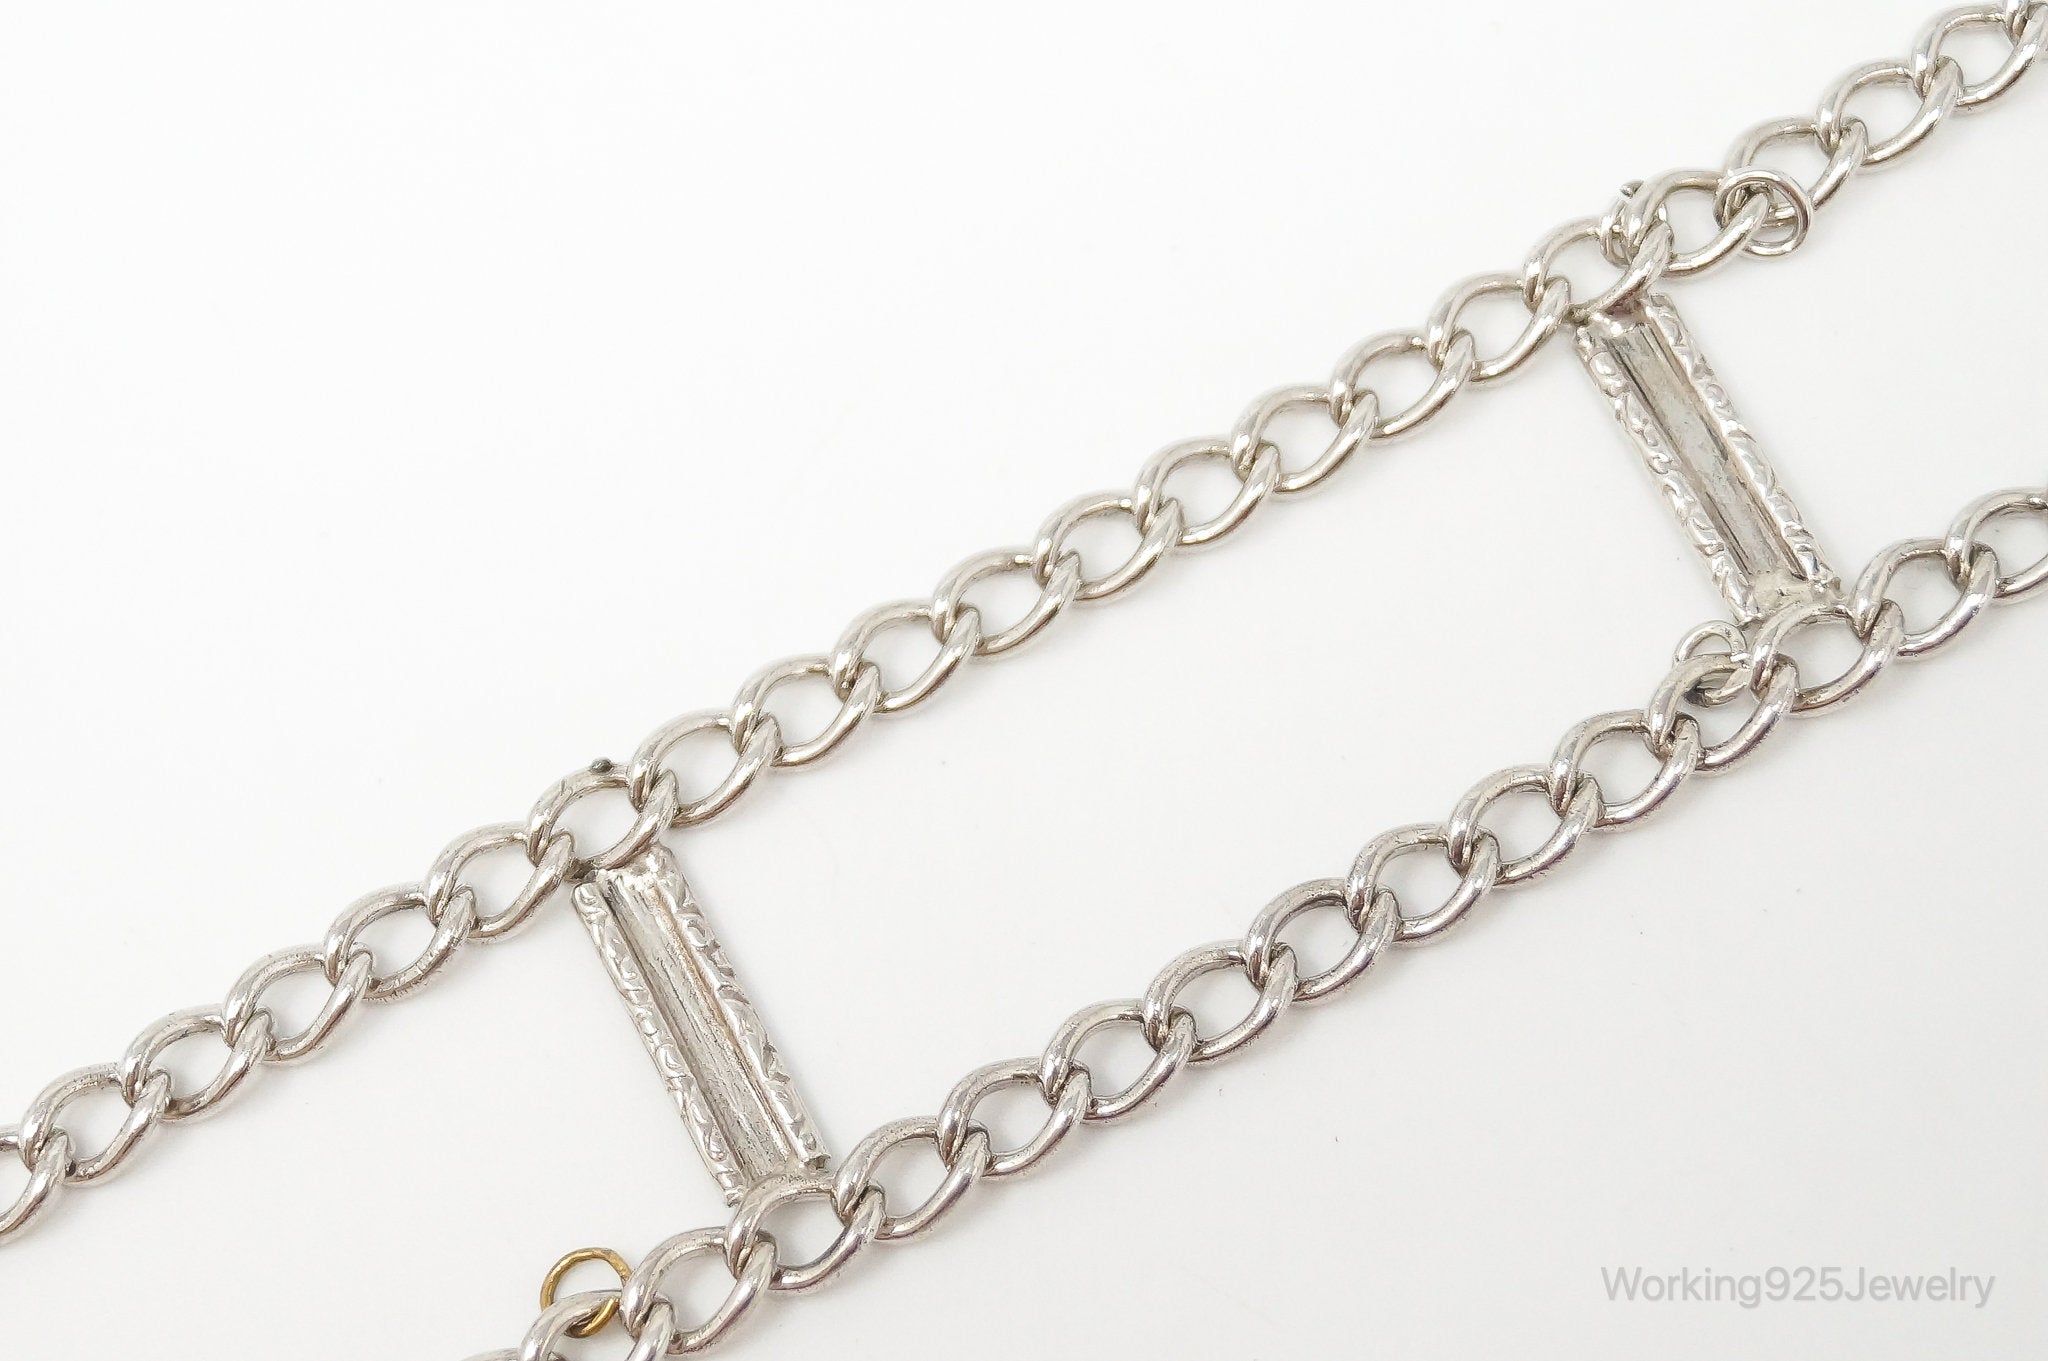 Vintage Trangle Ends Sterling Silver Charm Link Bracelet